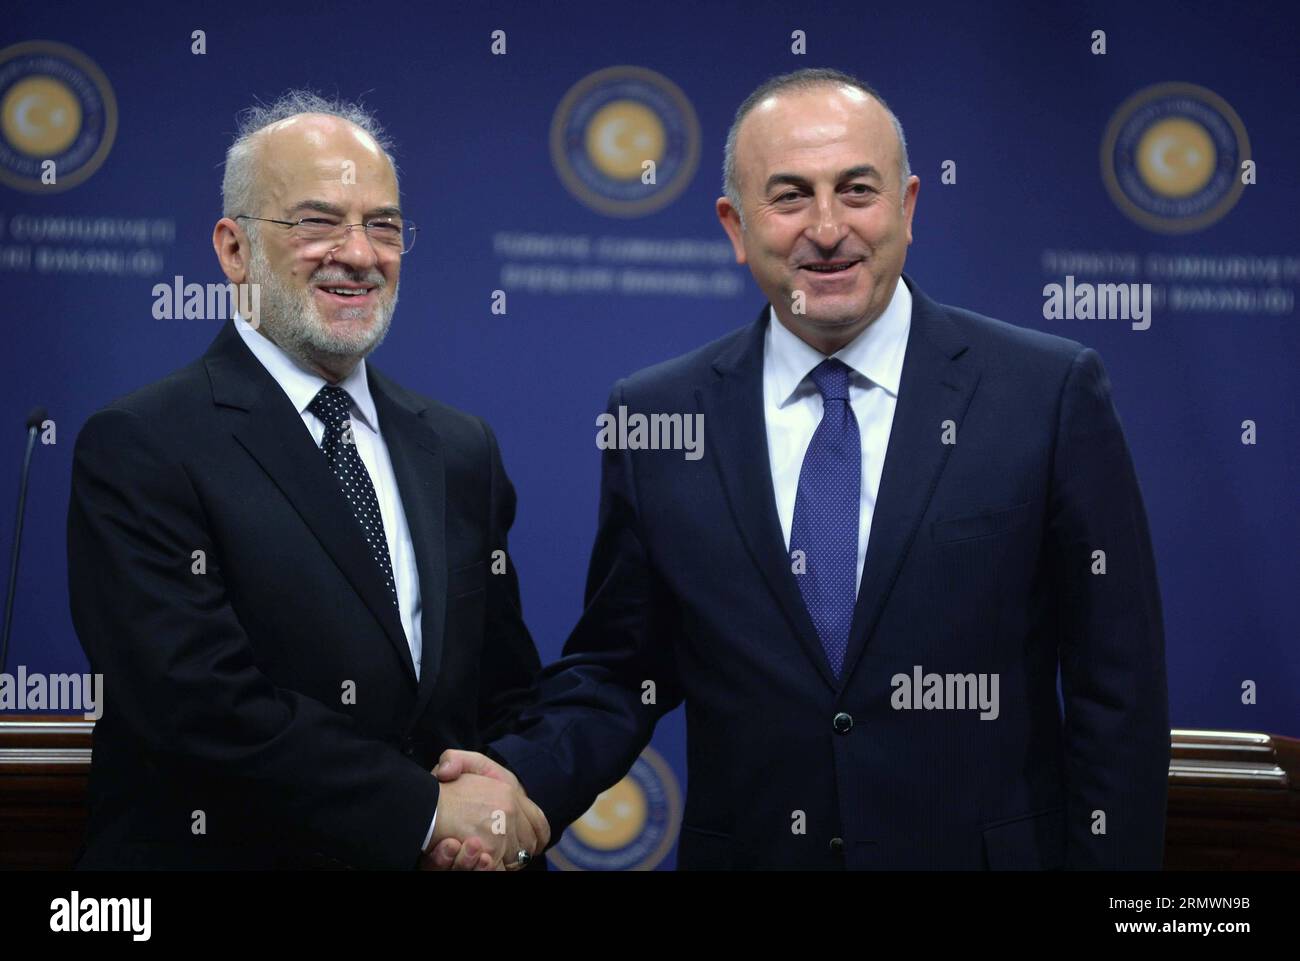 (141105) -- ANKARA, 5 de noviembre de 2014 -- El ministro de Asuntos Exteriores turco Mevlut Cavusoglu(R) se da la mano con el ministro de Asuntos Exteriores iraquí Ibrahim al-Jaafari durante una conferencia de prensa conjunta después de sus conversaciones oficiales en la capital turca de Ankara el 5 de noviembre de 2014. Mevlut Cavusoglu dijo que Turquía apoyaría al pueblo iraquí y al gobierno en su lucha contra el Estado Islámico (EI) y que Turquía ayudaría a Irak a entrenar a su ejército. TURQUÍA-ANKARA-FM-REUNIÓN-PRENSA CONFERENCIA MertxMacit PUBLICATIONxNOTxINxCHN ANKARA Nov 5 2014 Ministros de Asuntos Exteriores turcos r sacuden la mano con la visita de F iraquí Foto de stock